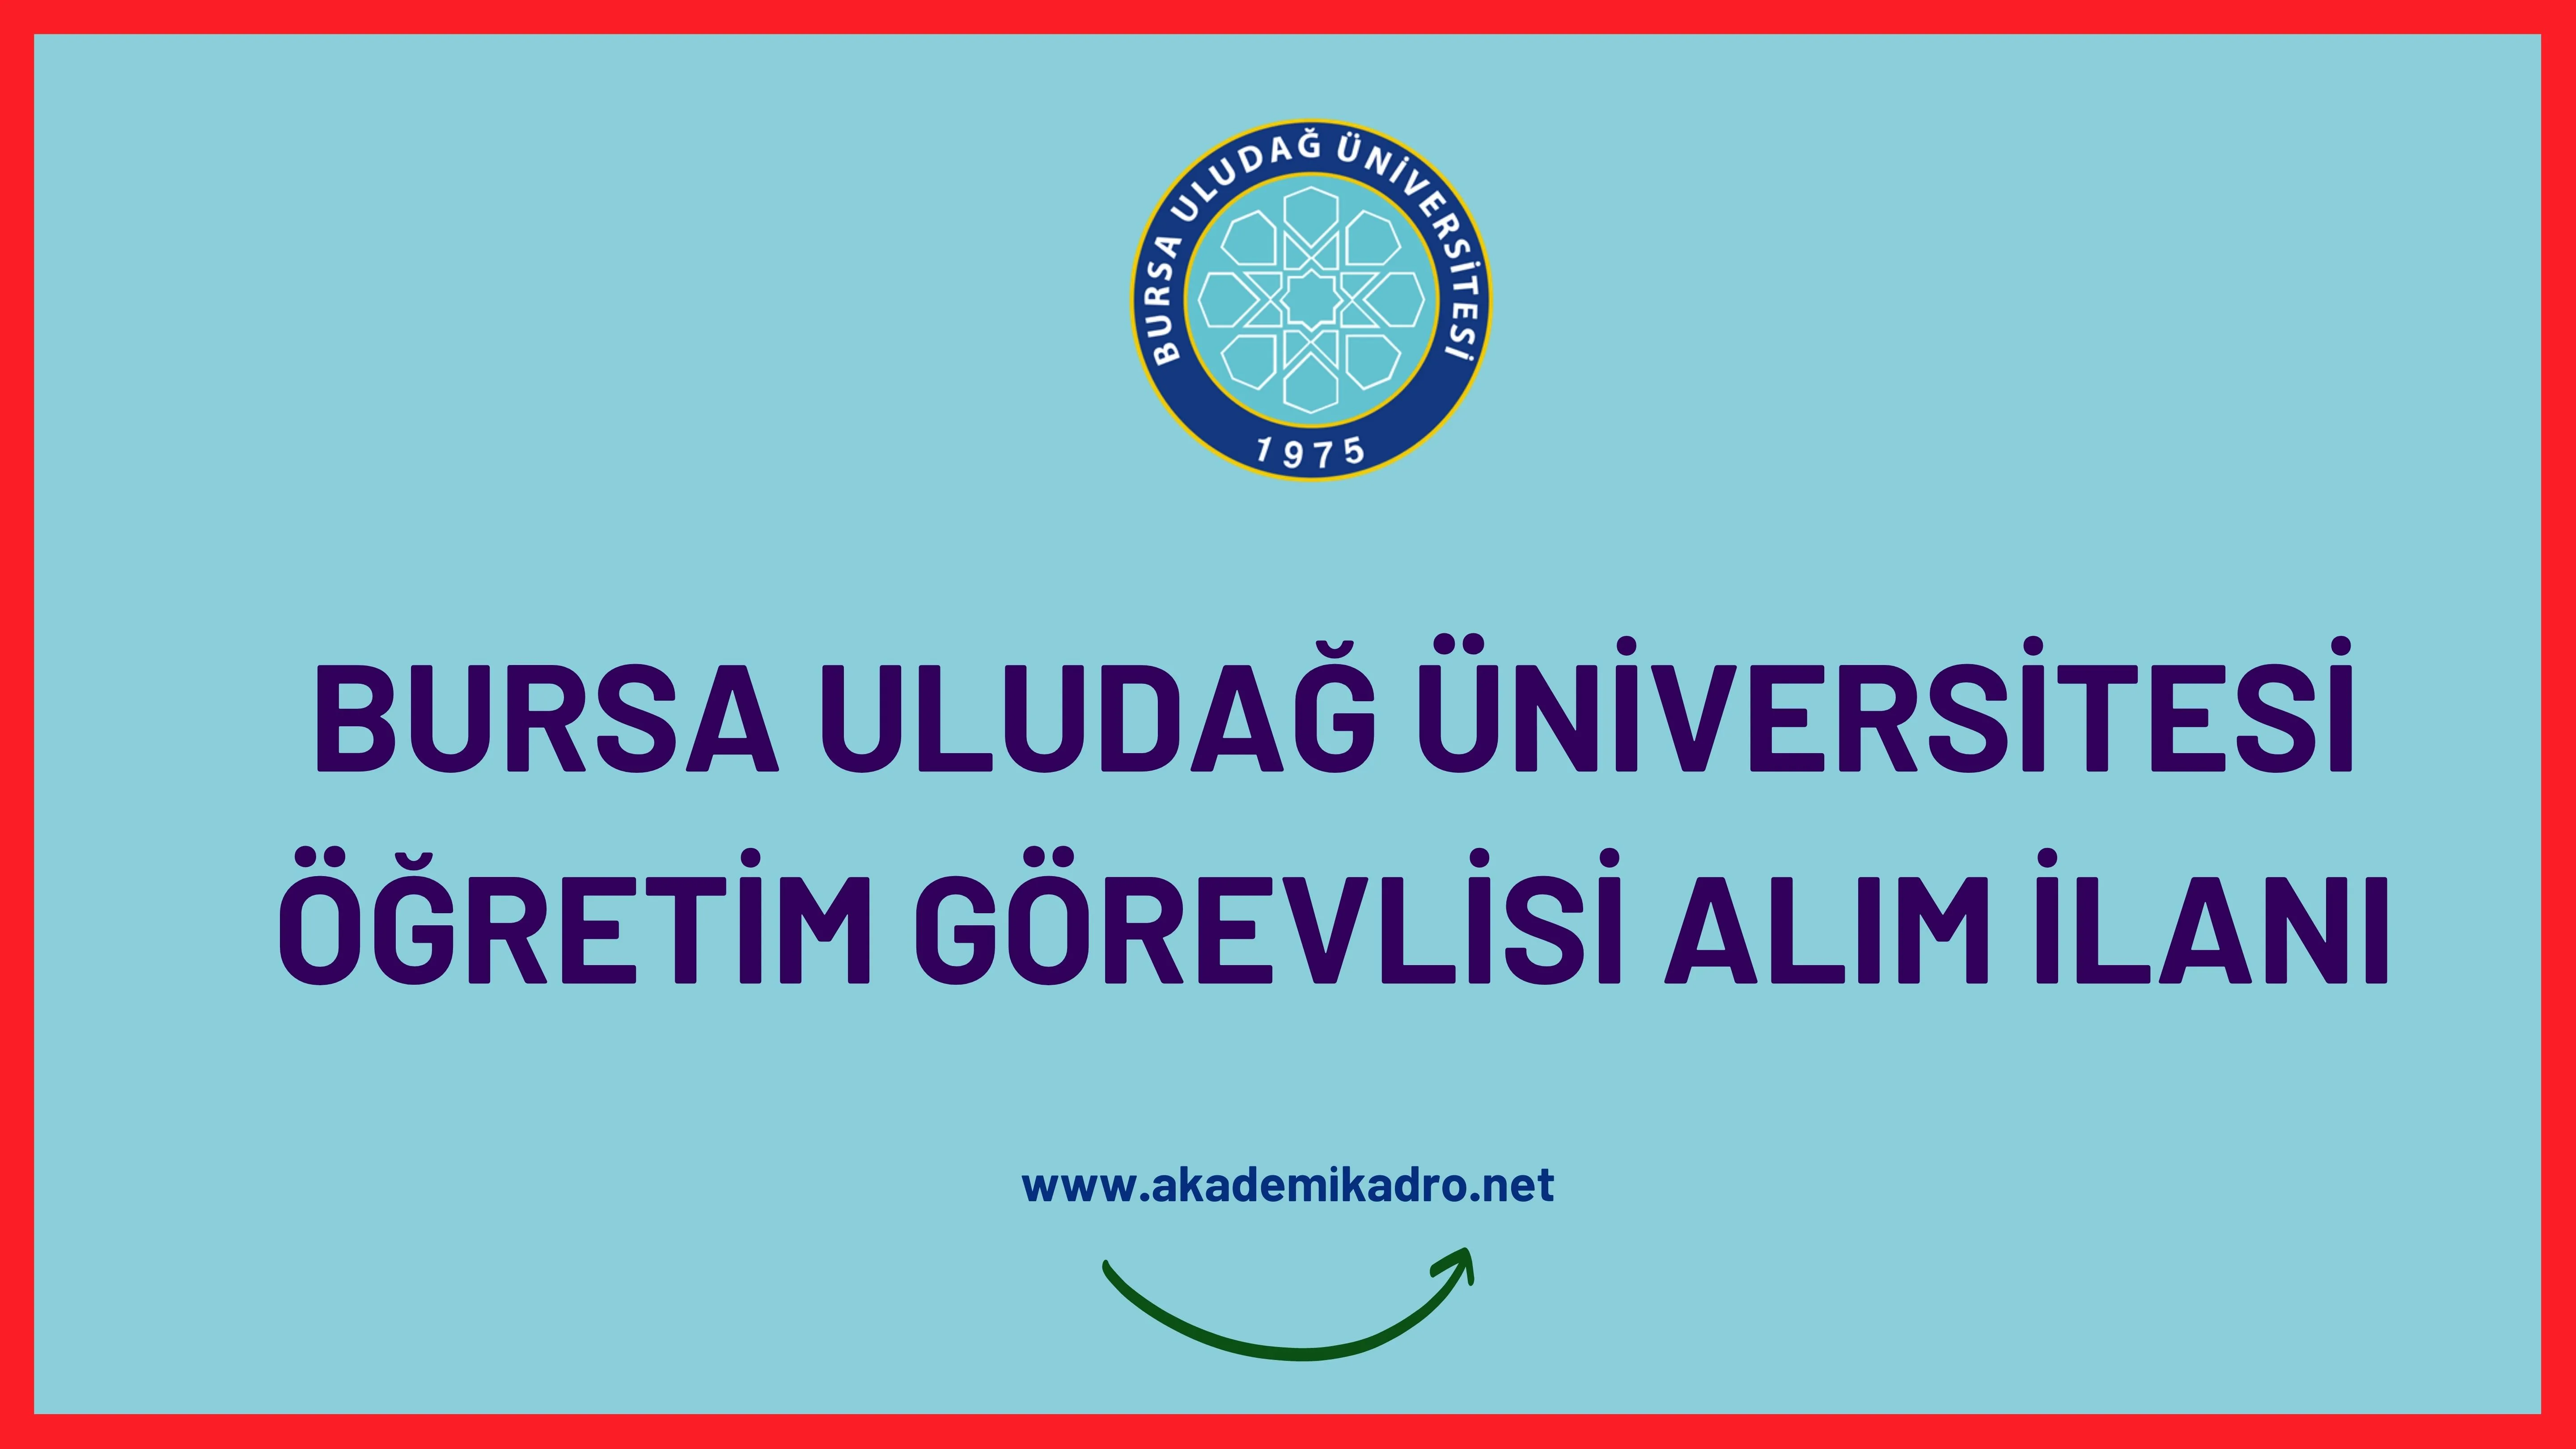 Bursa Uludağ Üniversitesi 8 Öğretim görevlisi alacak. Son başvuru tarihi 11 Ocak 2023.